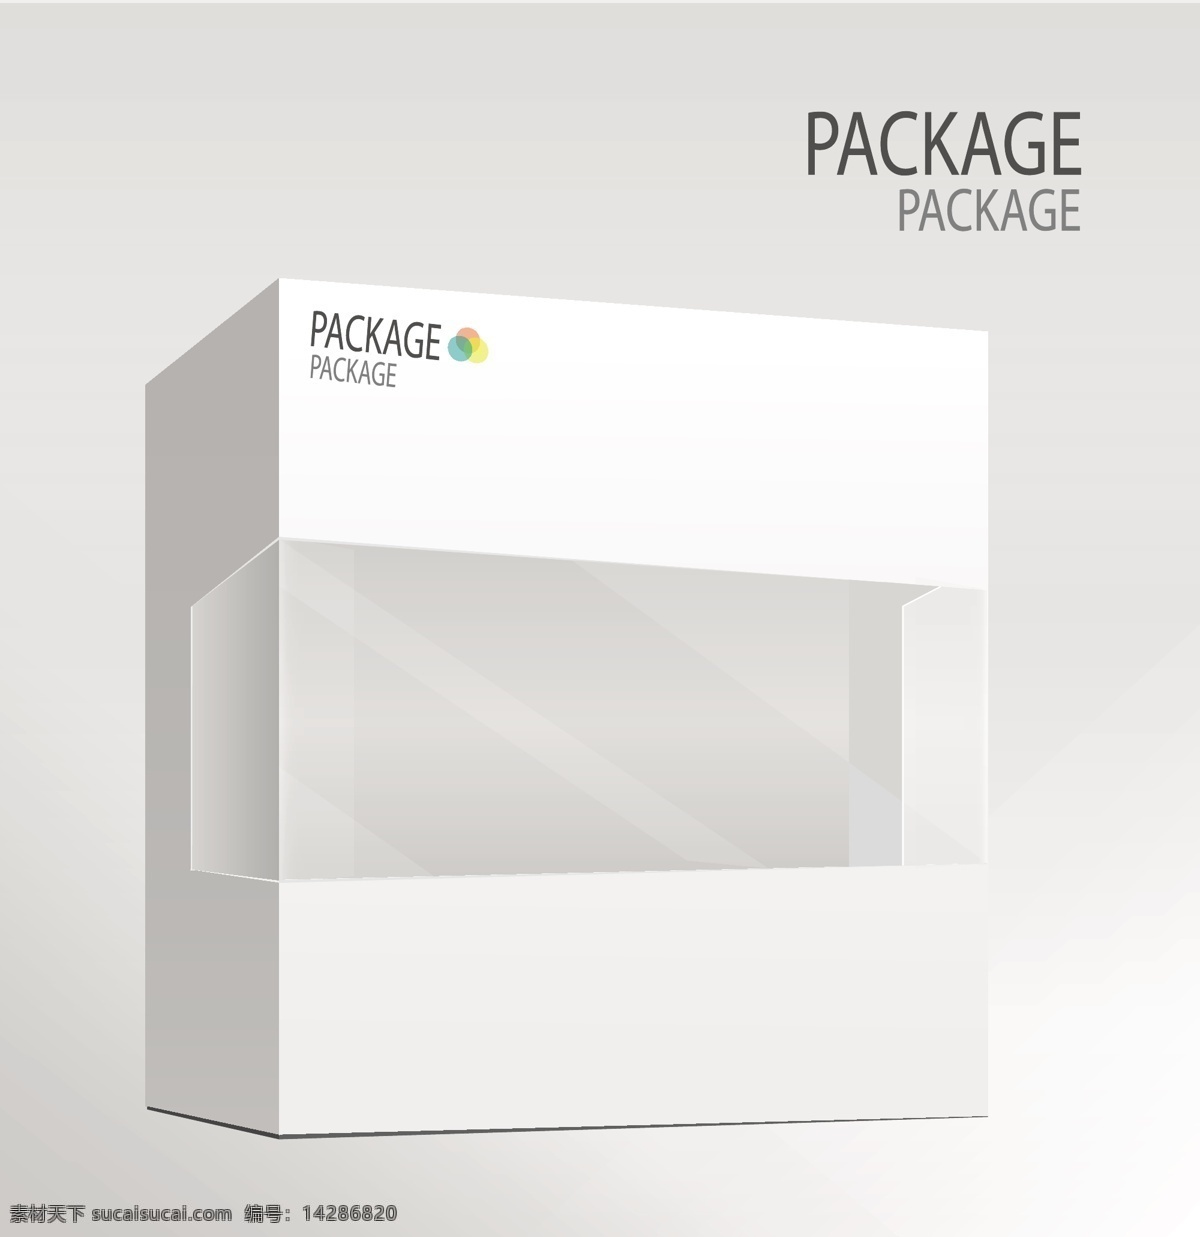 透明包装盒 数码包装盒 耳机包装 耳机盒 包装盒效果图 包装盒 包装贴图 效果图 设计效果图 分层 包装设计 广告设计模板